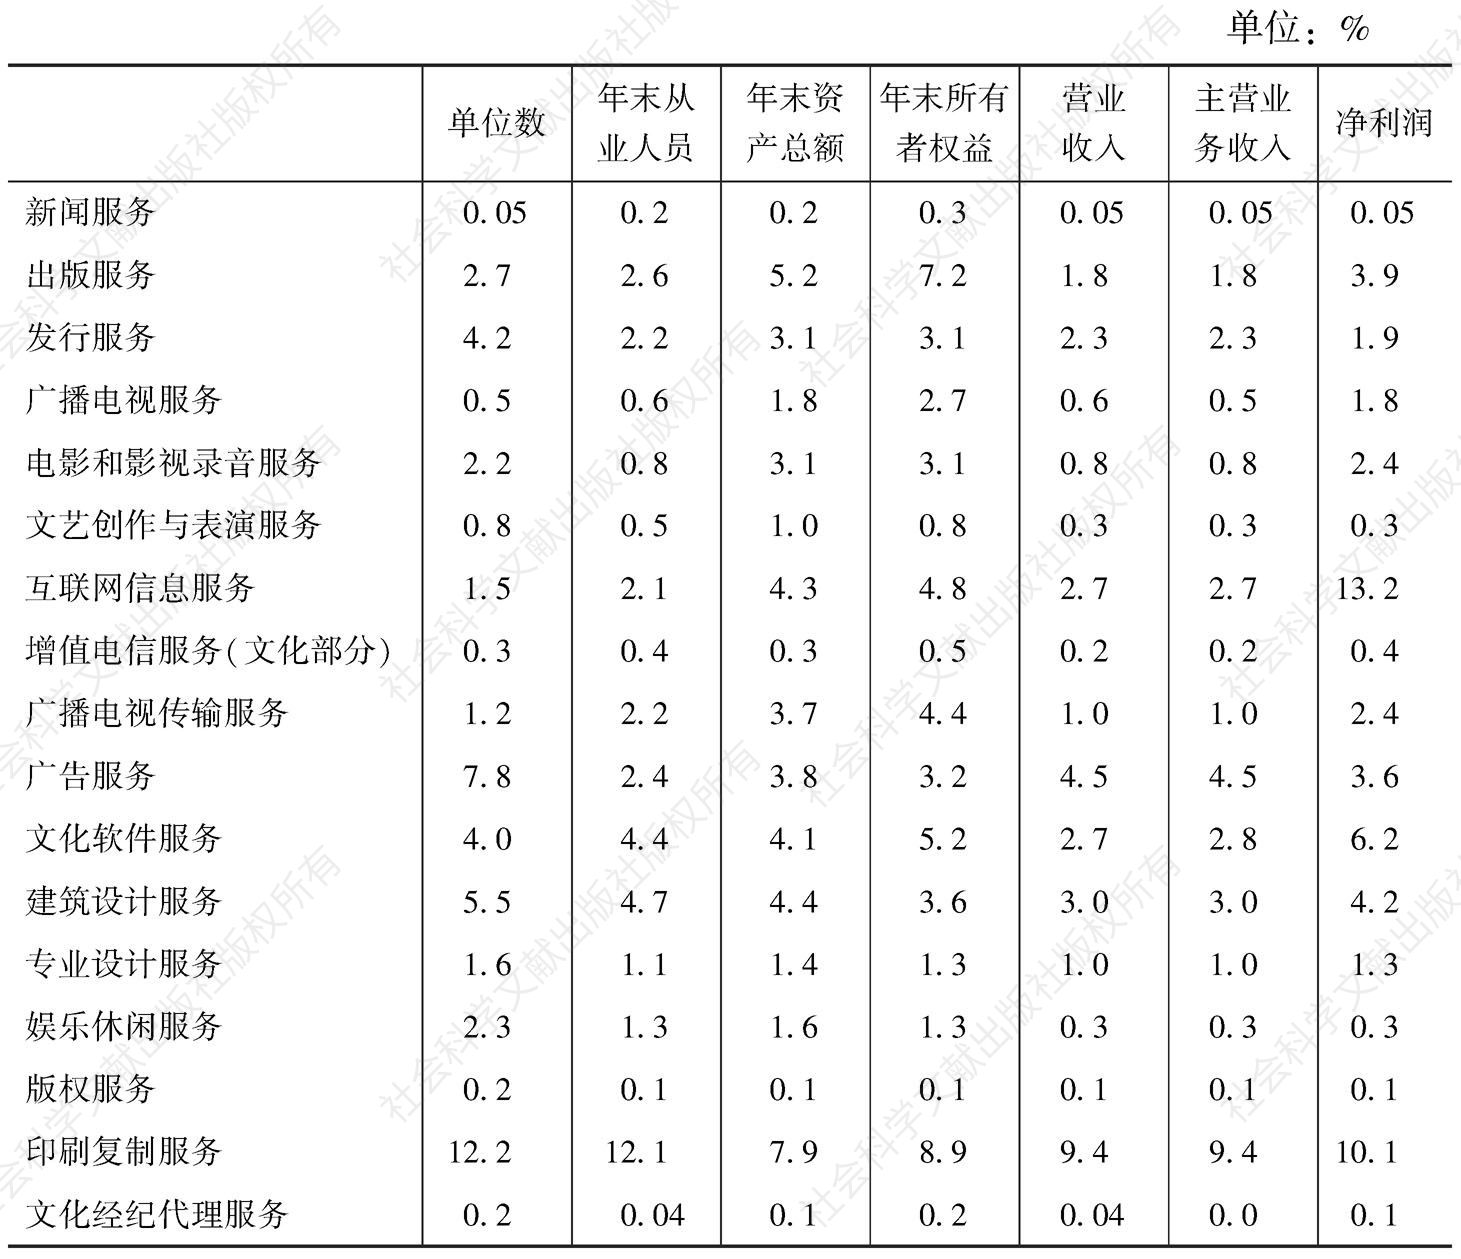 表7 2013年全国规模以上文化企业主要经济指标中各“高关注度”中类所占比重